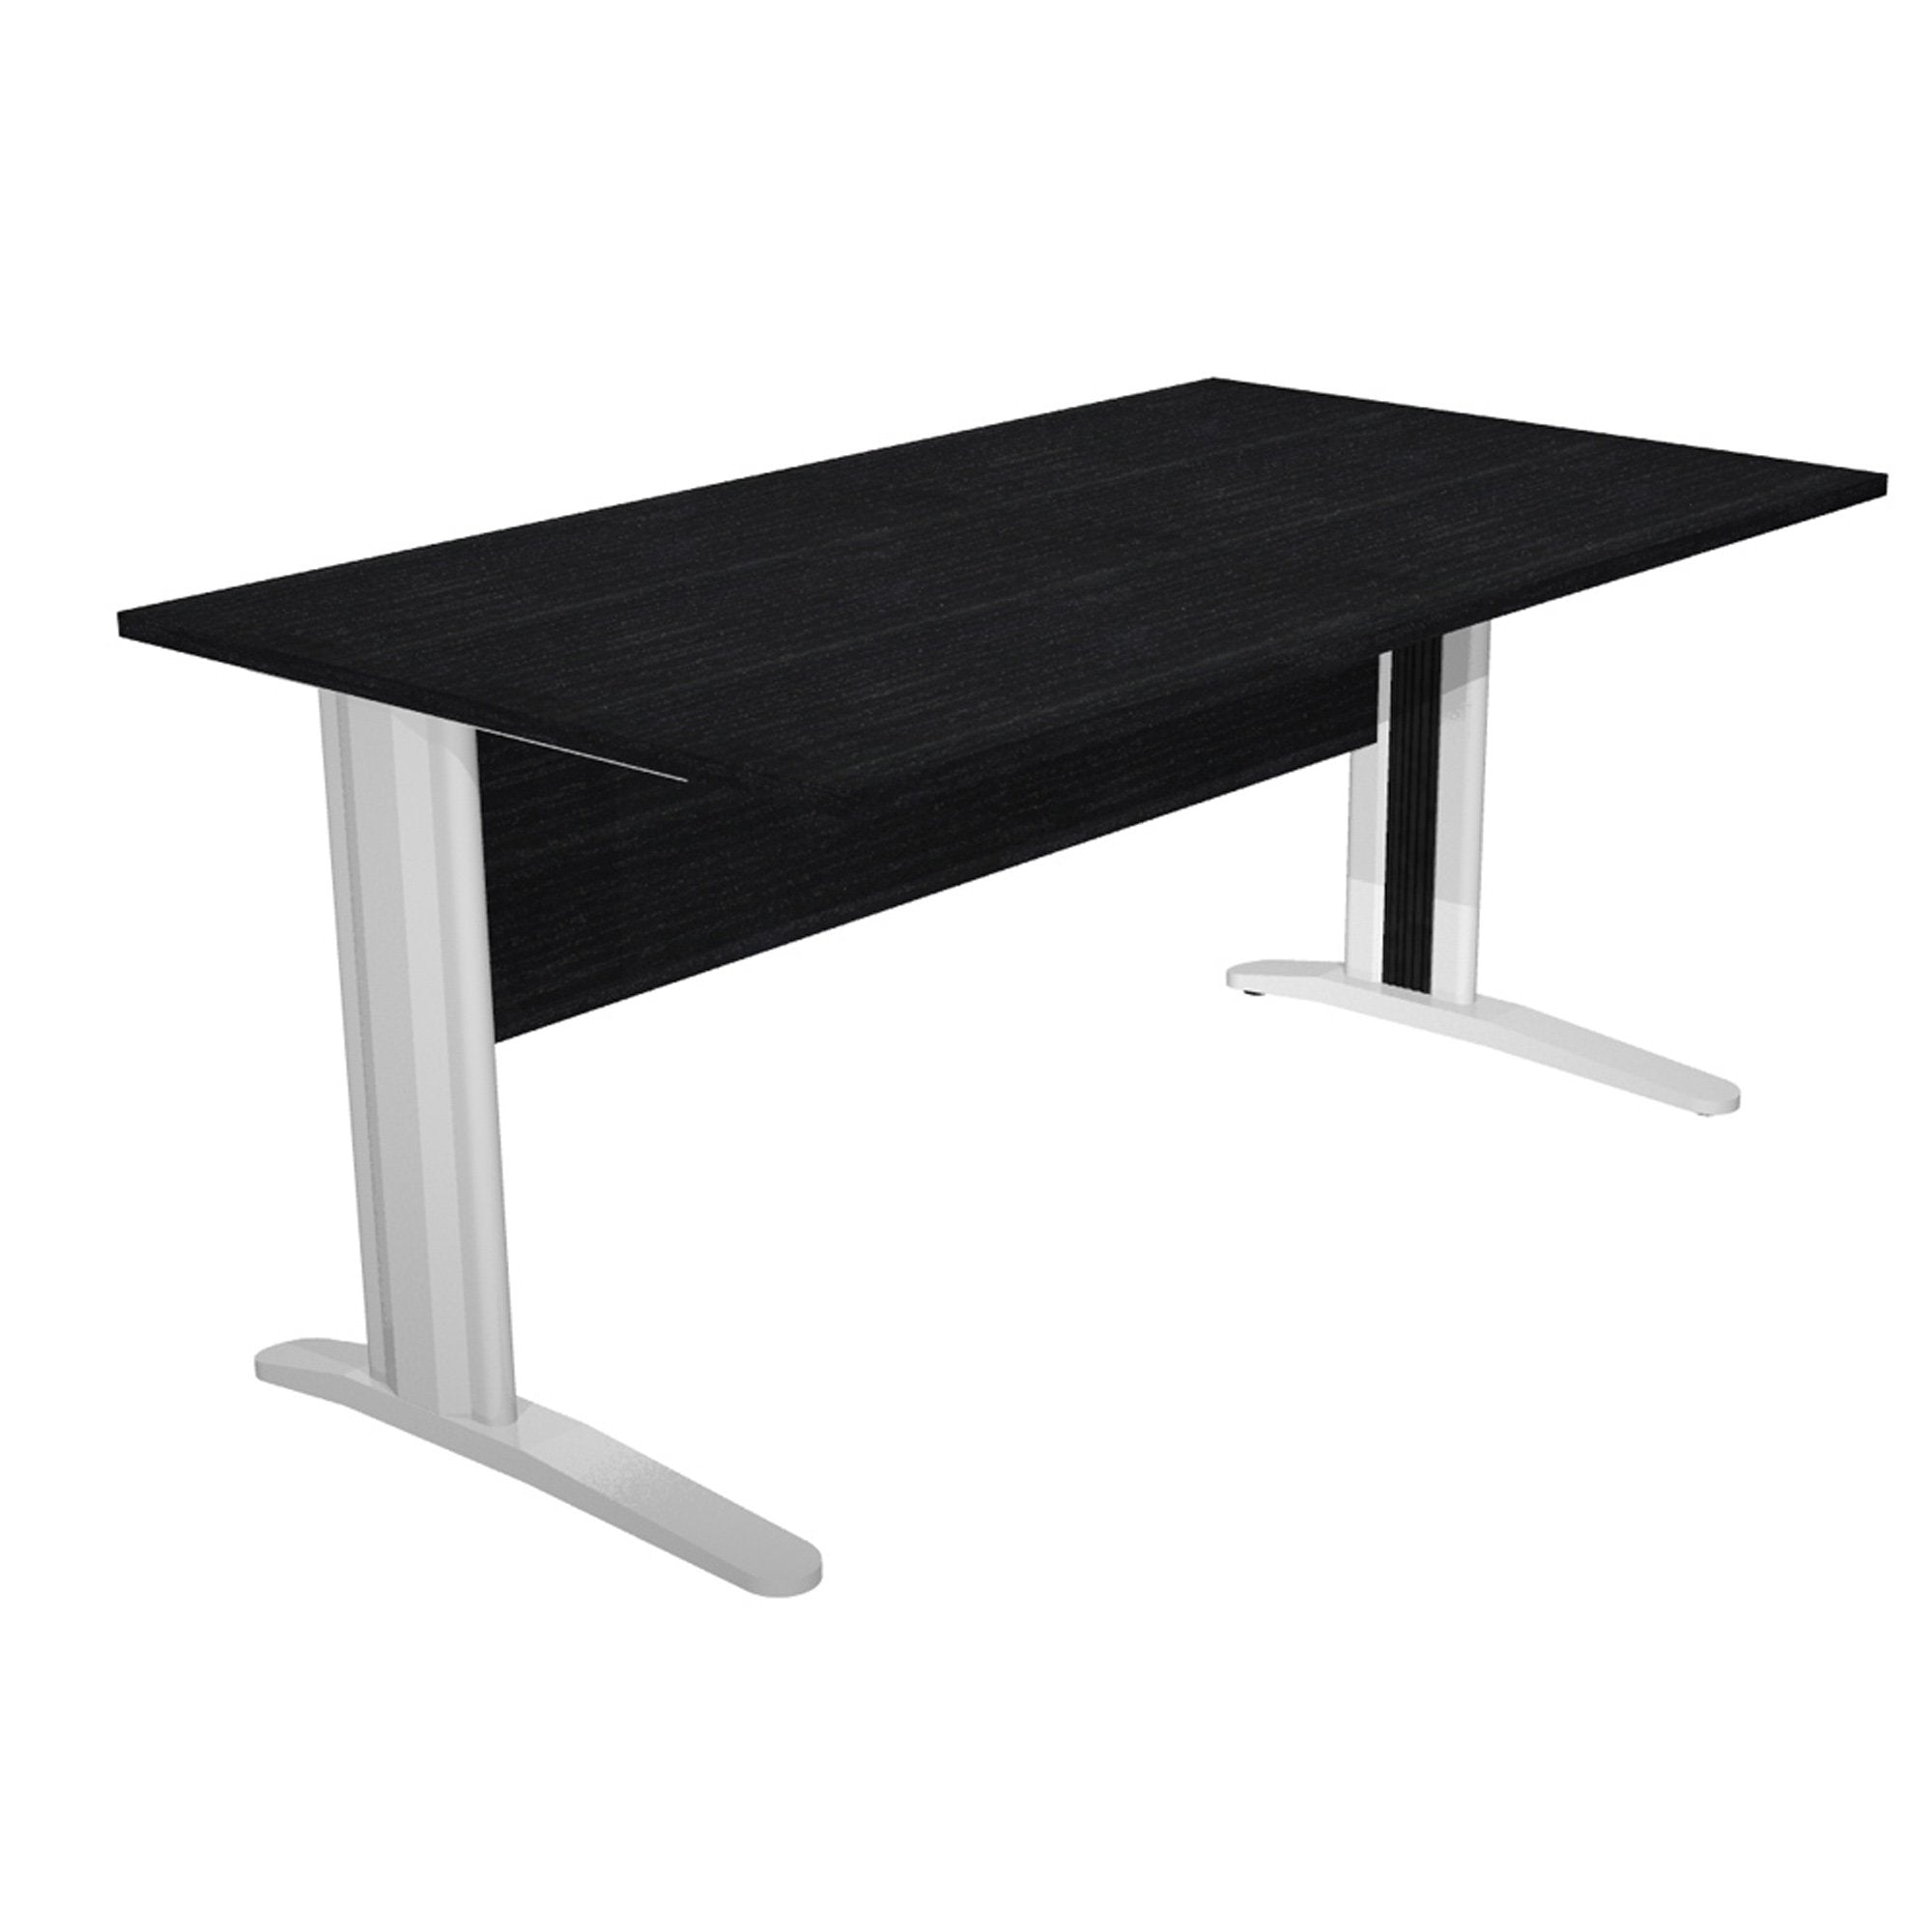 artexport-scrivania-lineare-160x80cm-nero-venato-fianchi-vernic-effetto-cromato-easy